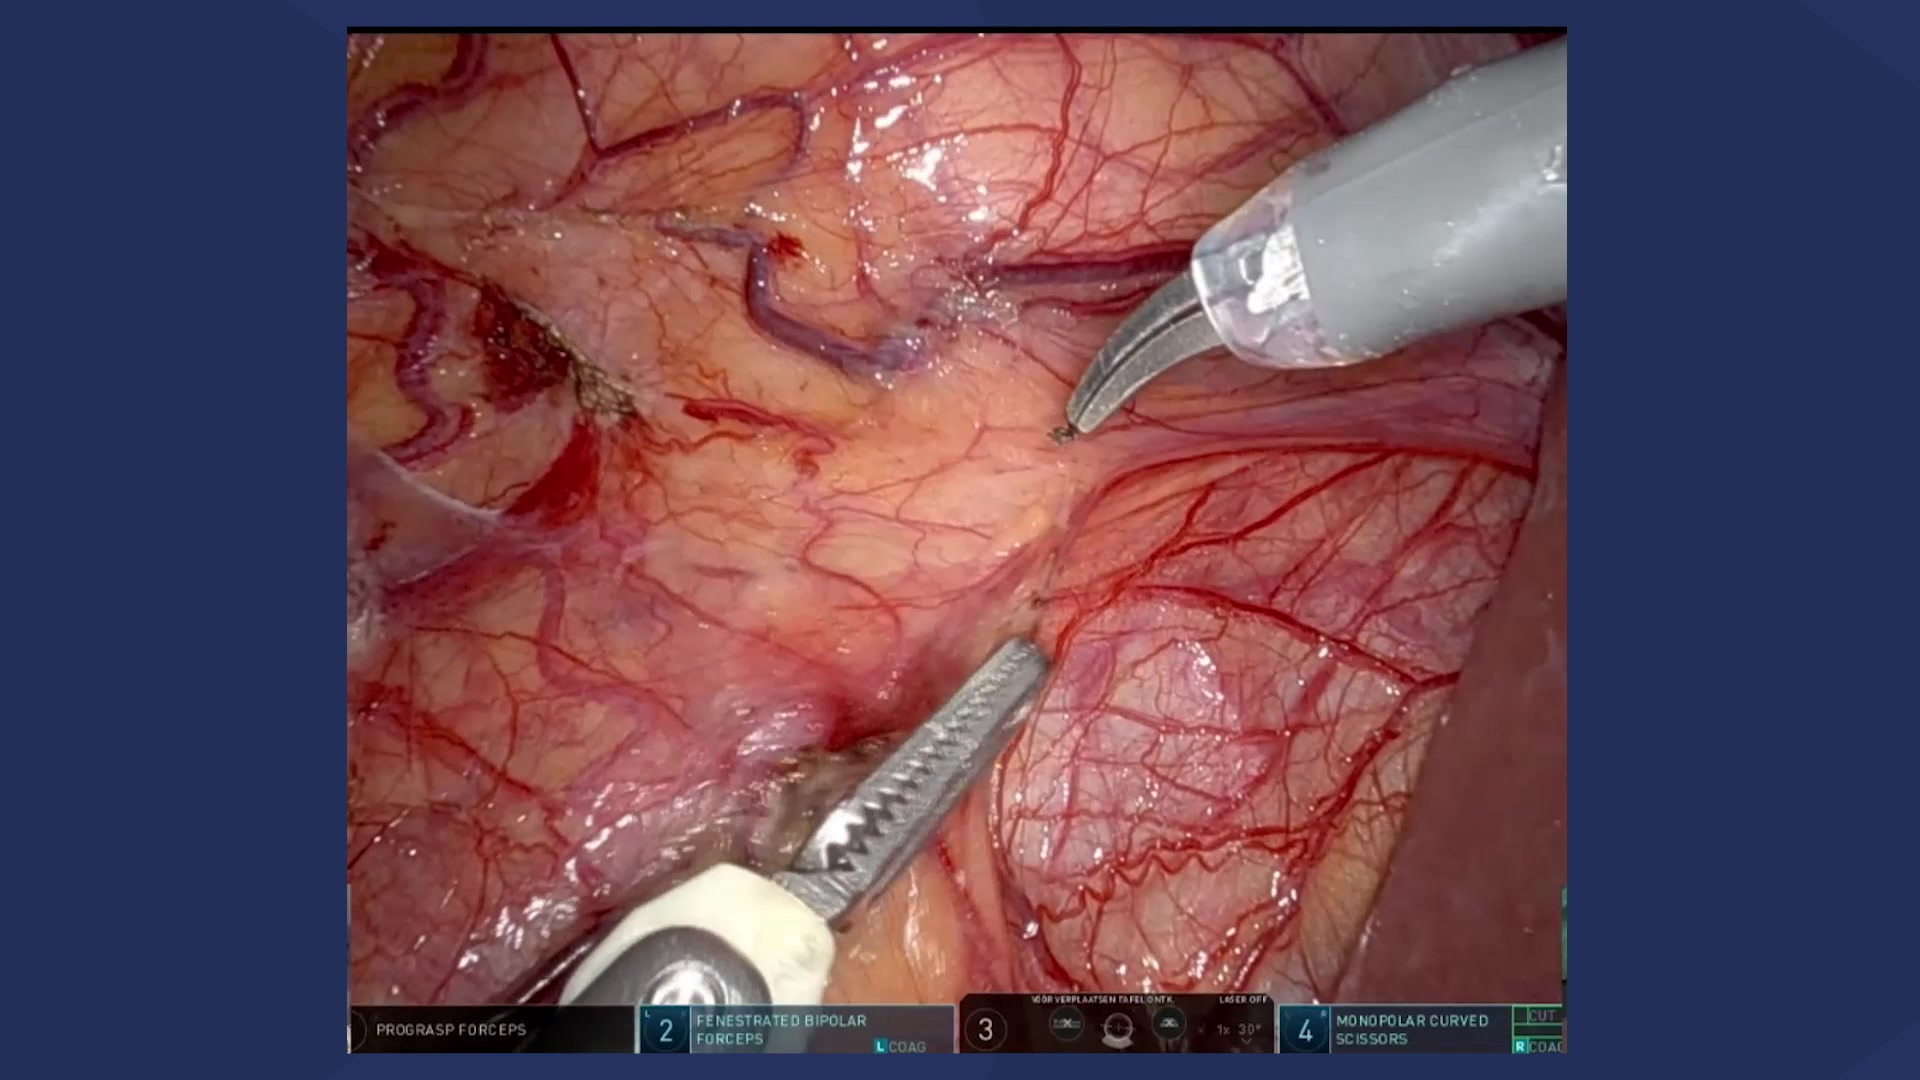 Robot-assisted right-sided radical nephro-ureterectomy